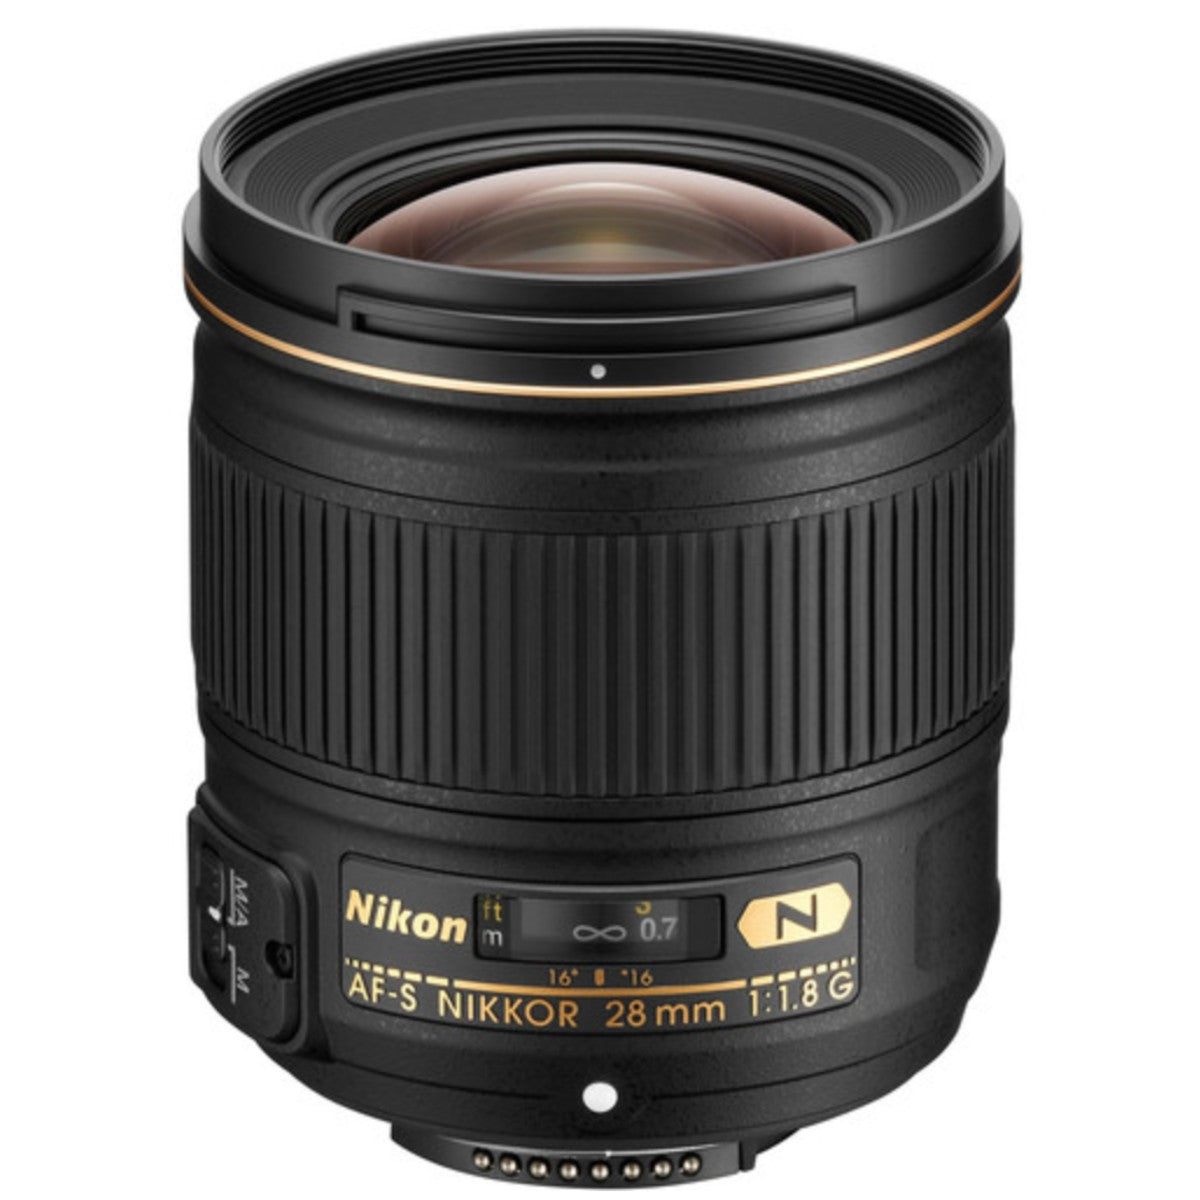 Nikon 28mm f/1.8G AF-S Nikkor Lens